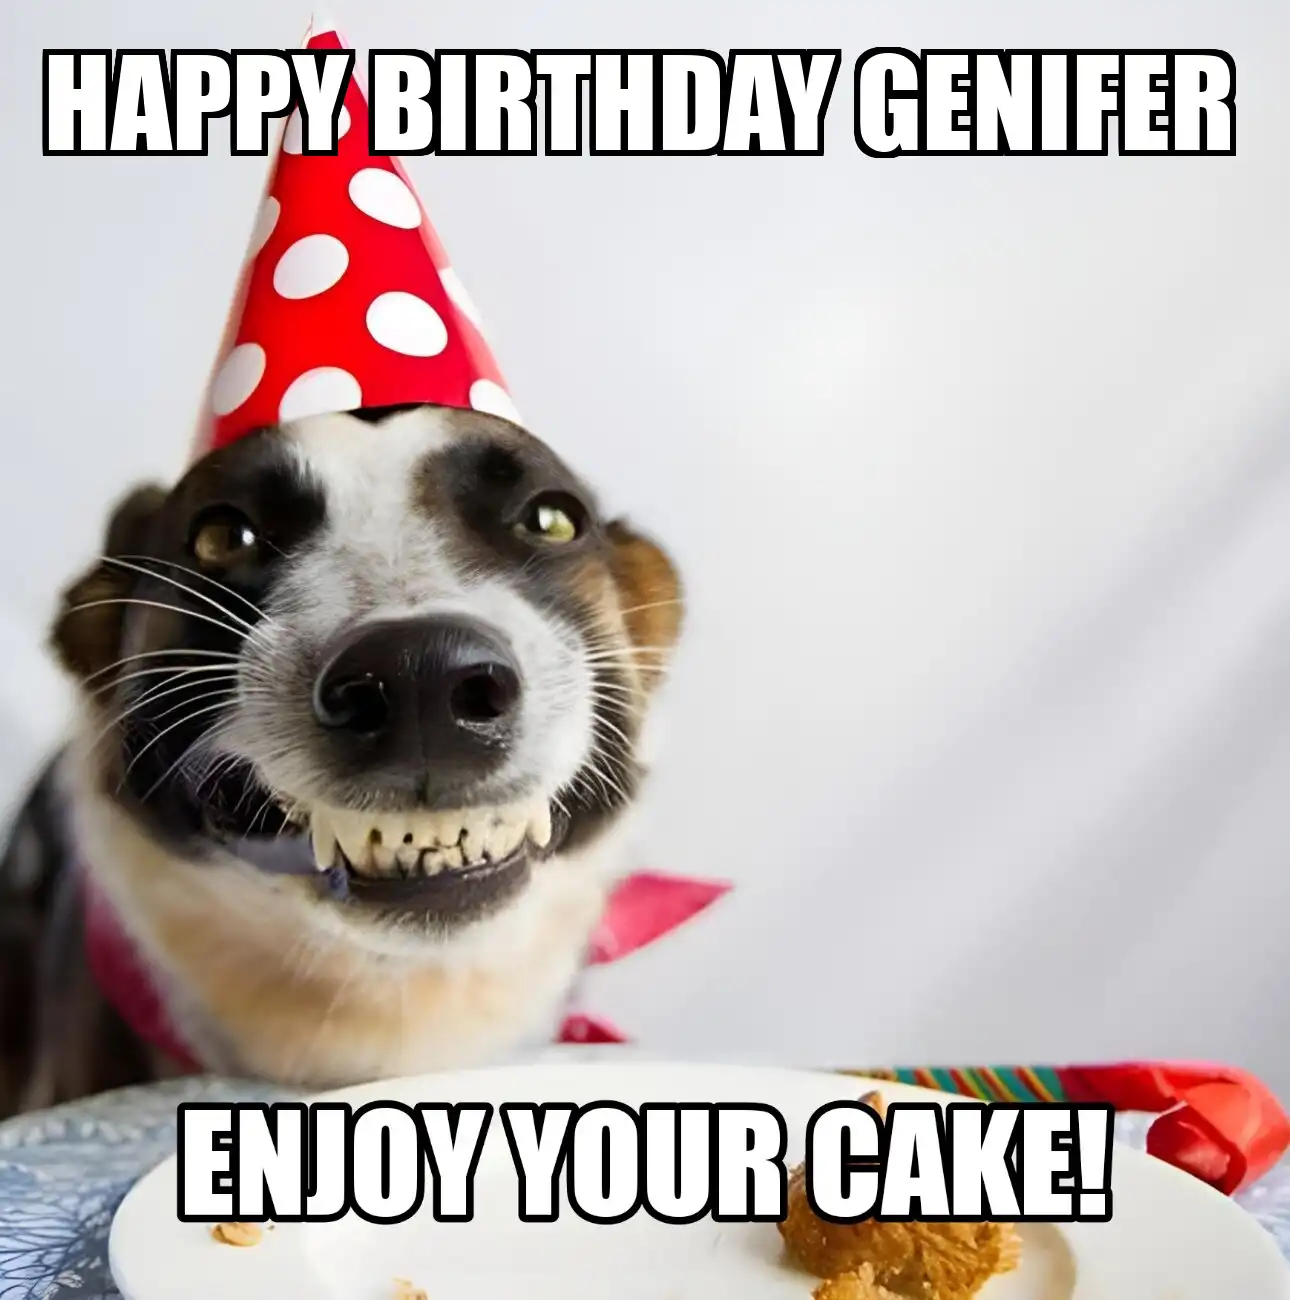 Happy Birthday Genifer Enjoy Your Cake Dog Meme